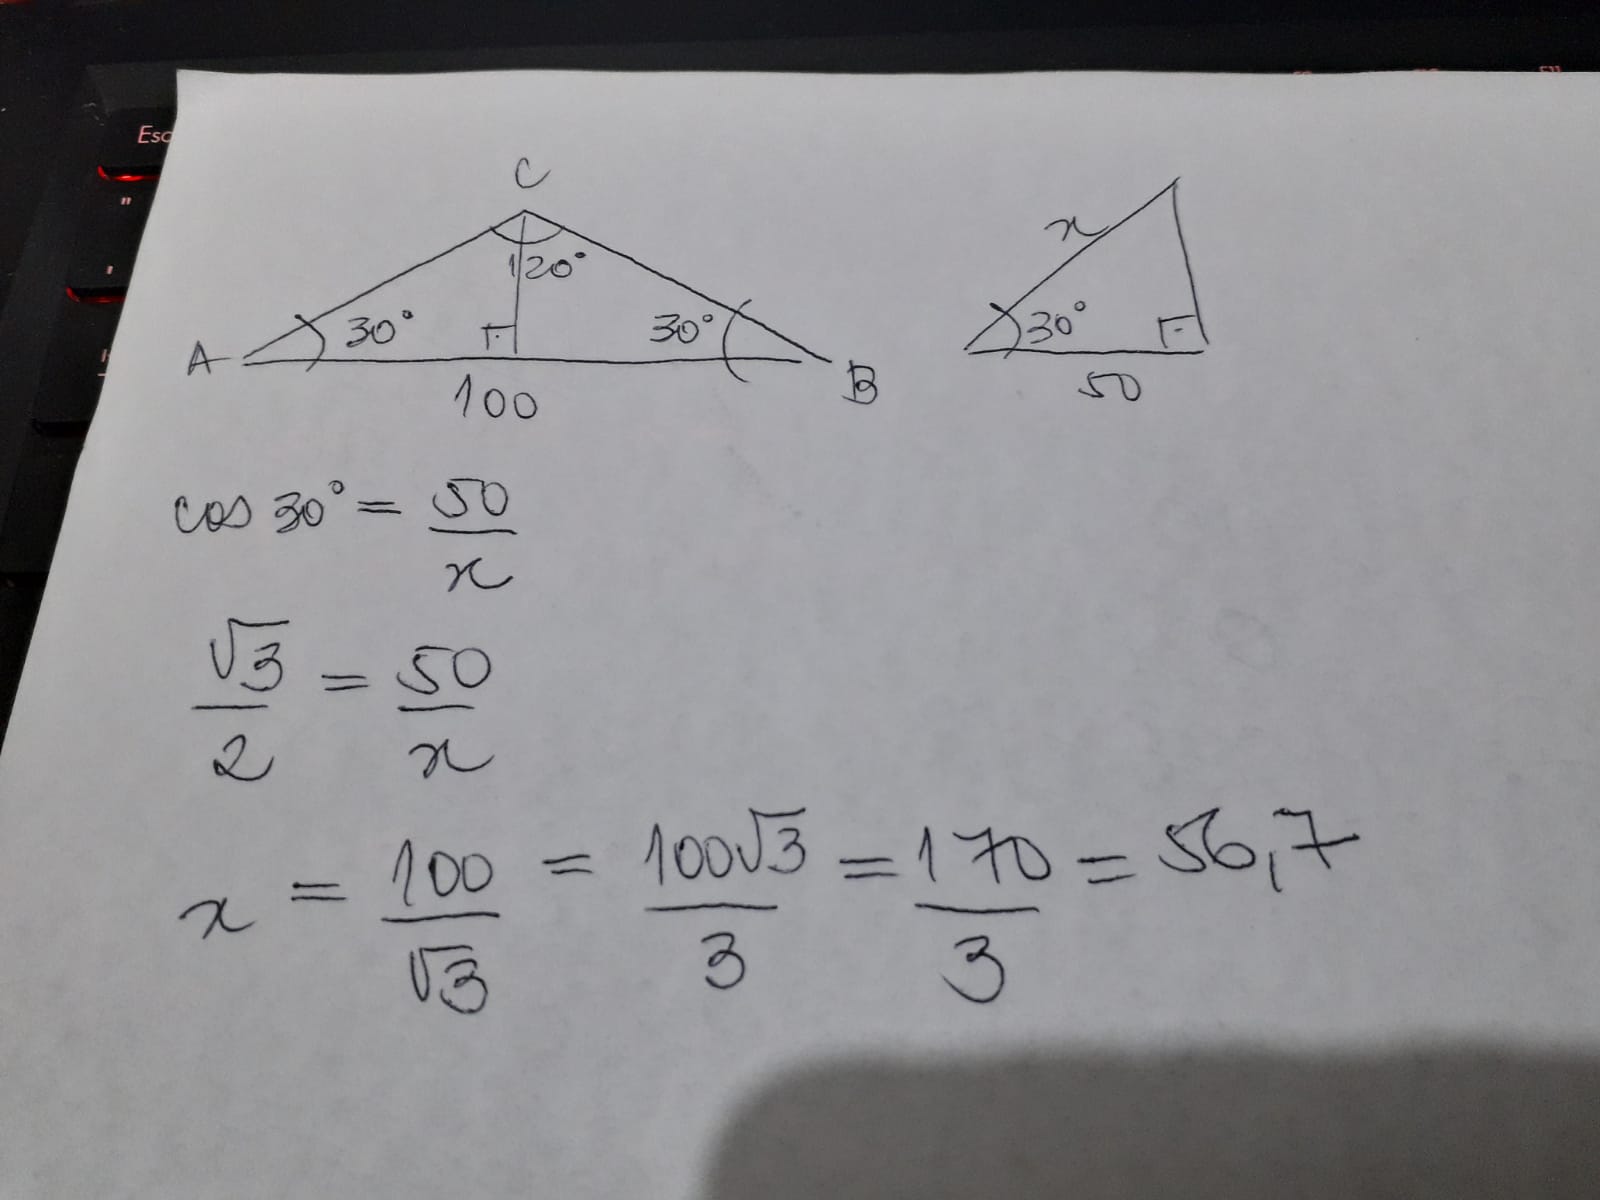 Um triângulo ABC possui os ângulos A = 30° e C = 120°. Além disso